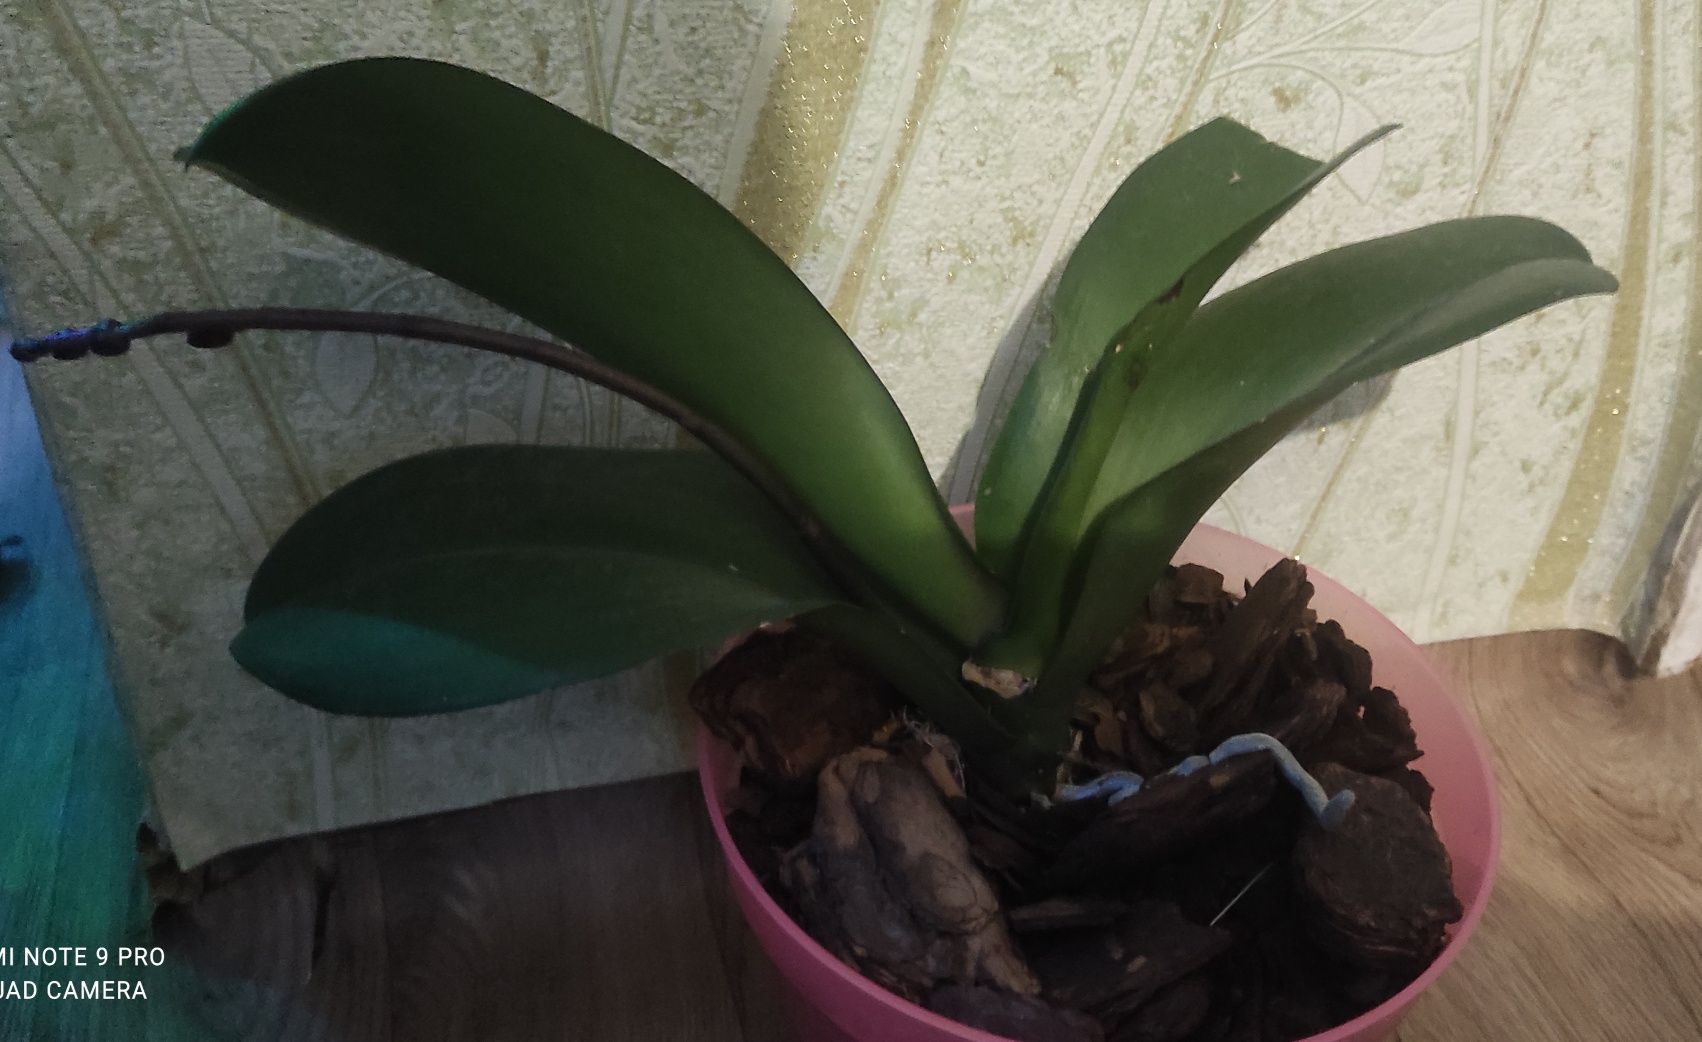 Орхидея малинового цвета